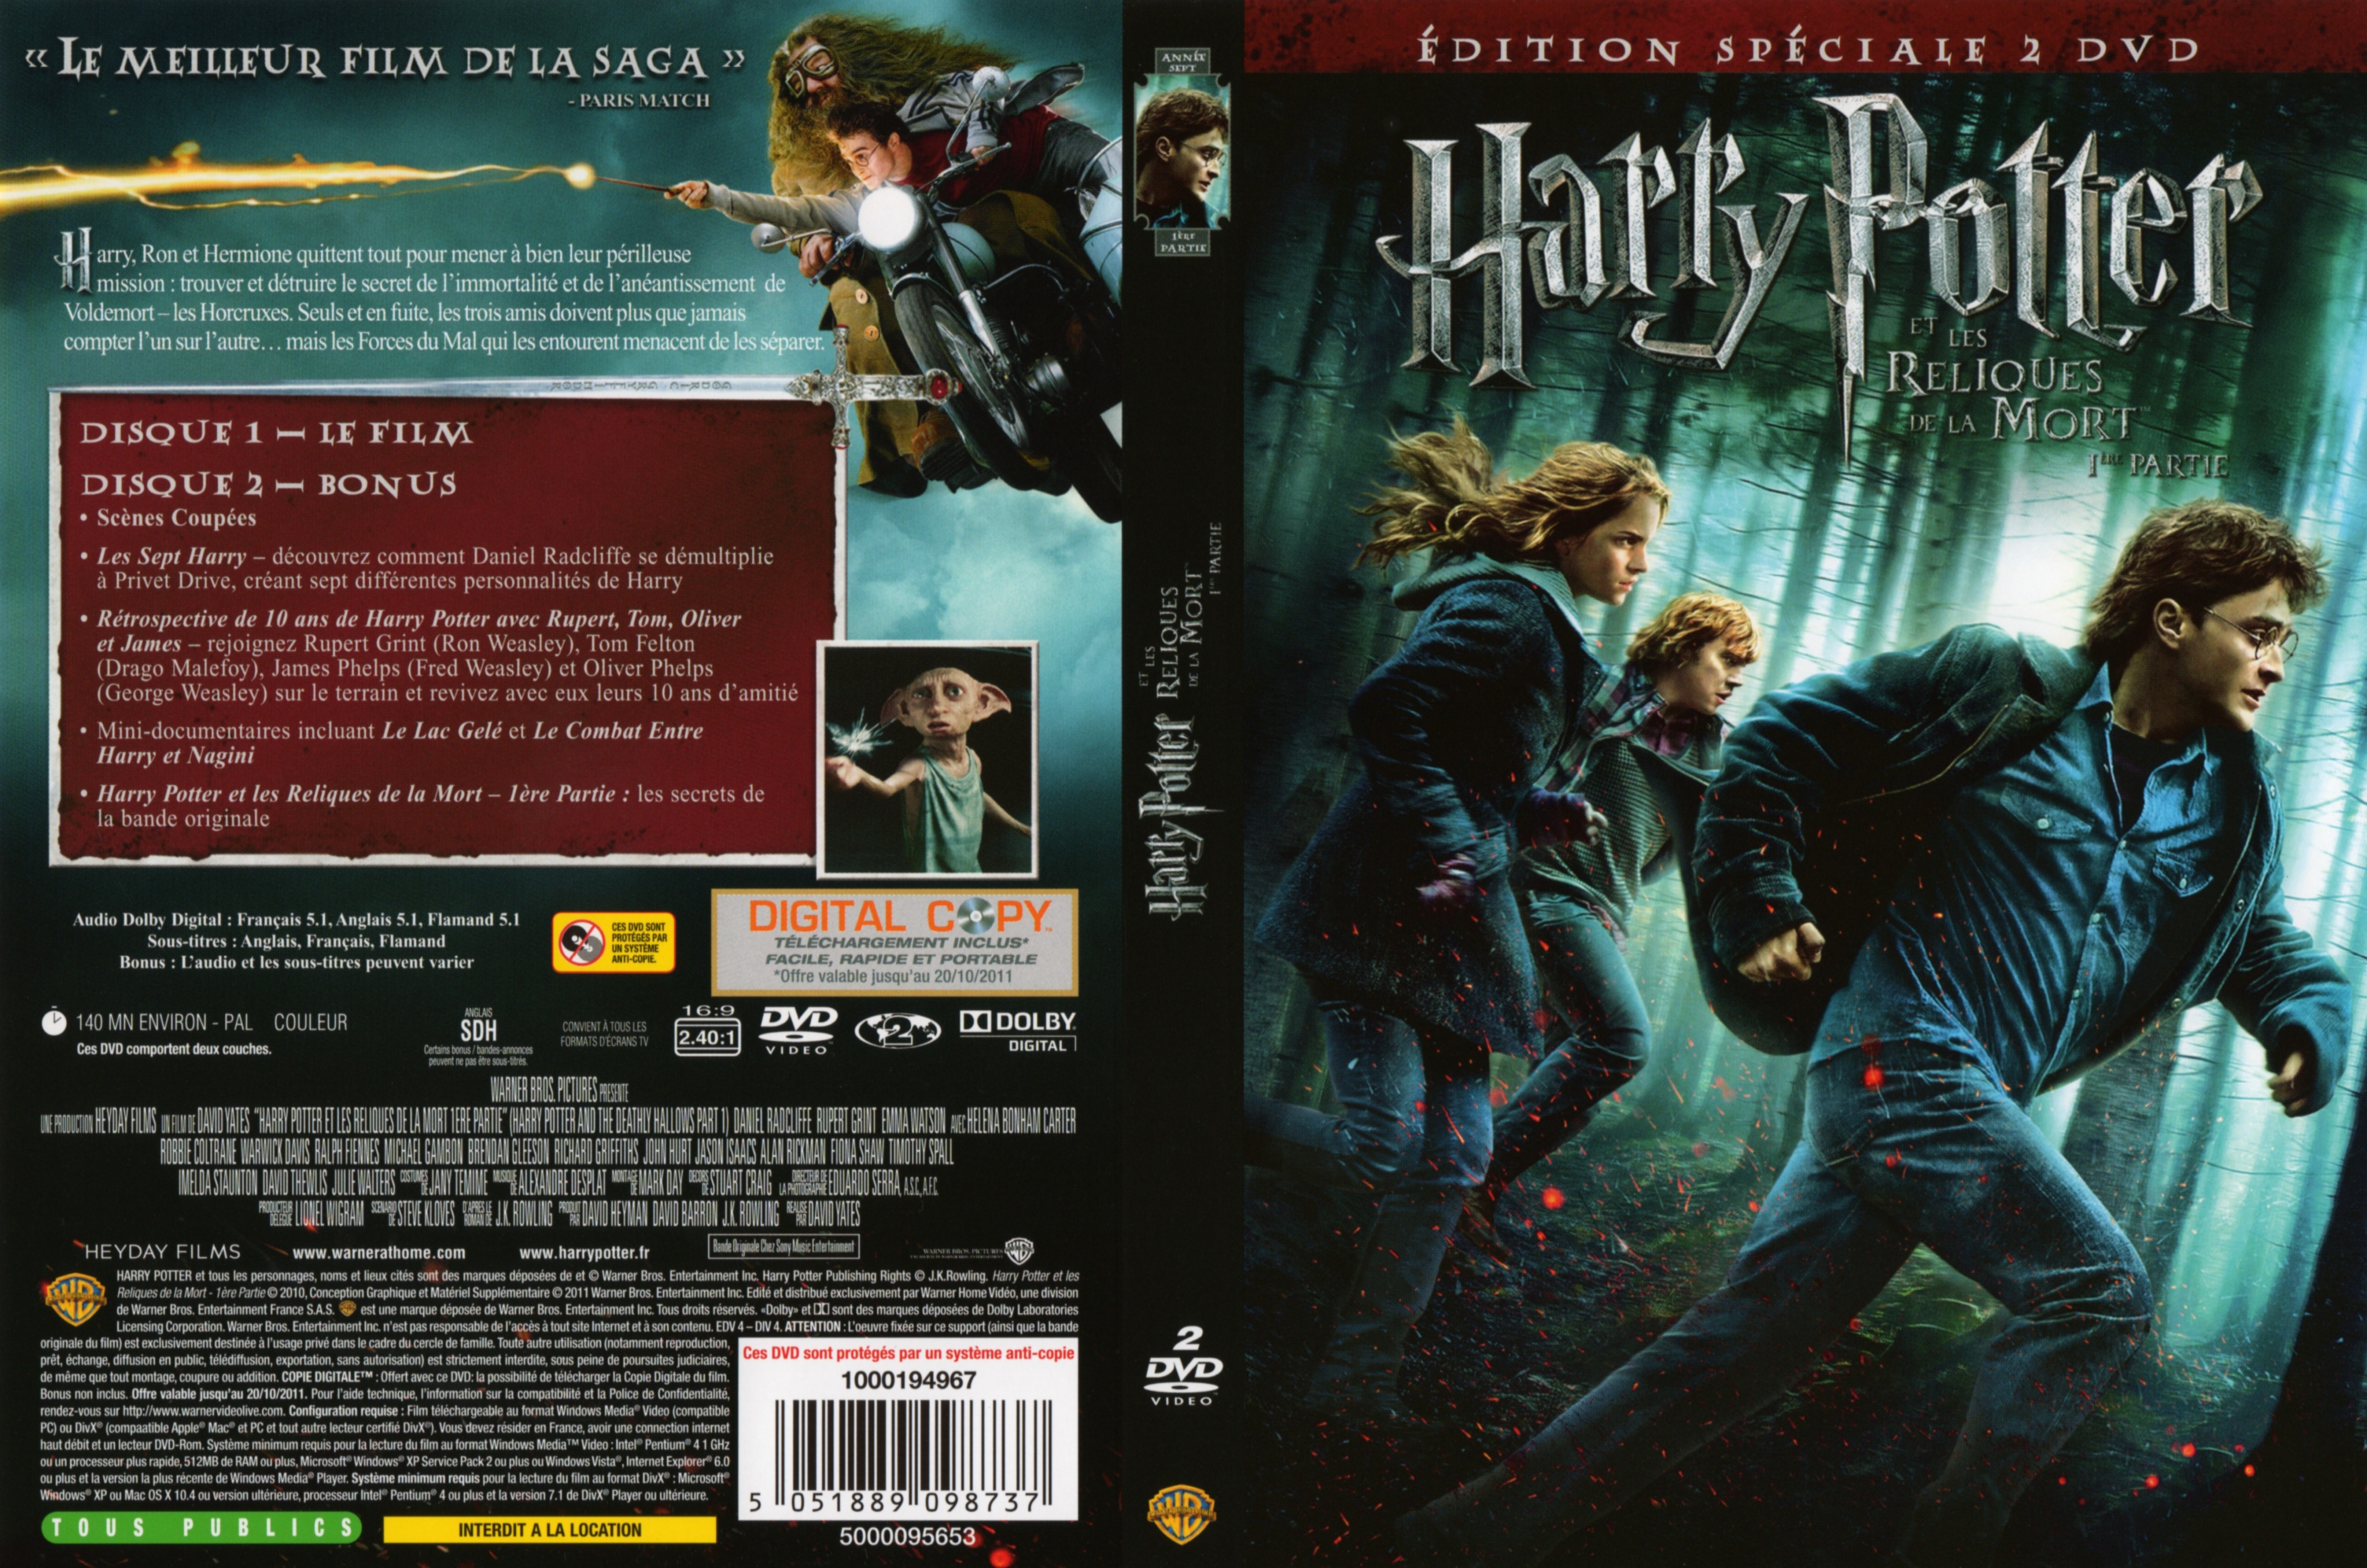 Jaquette DVD Harry Potter et les reliques de la mort - 1re partie v2